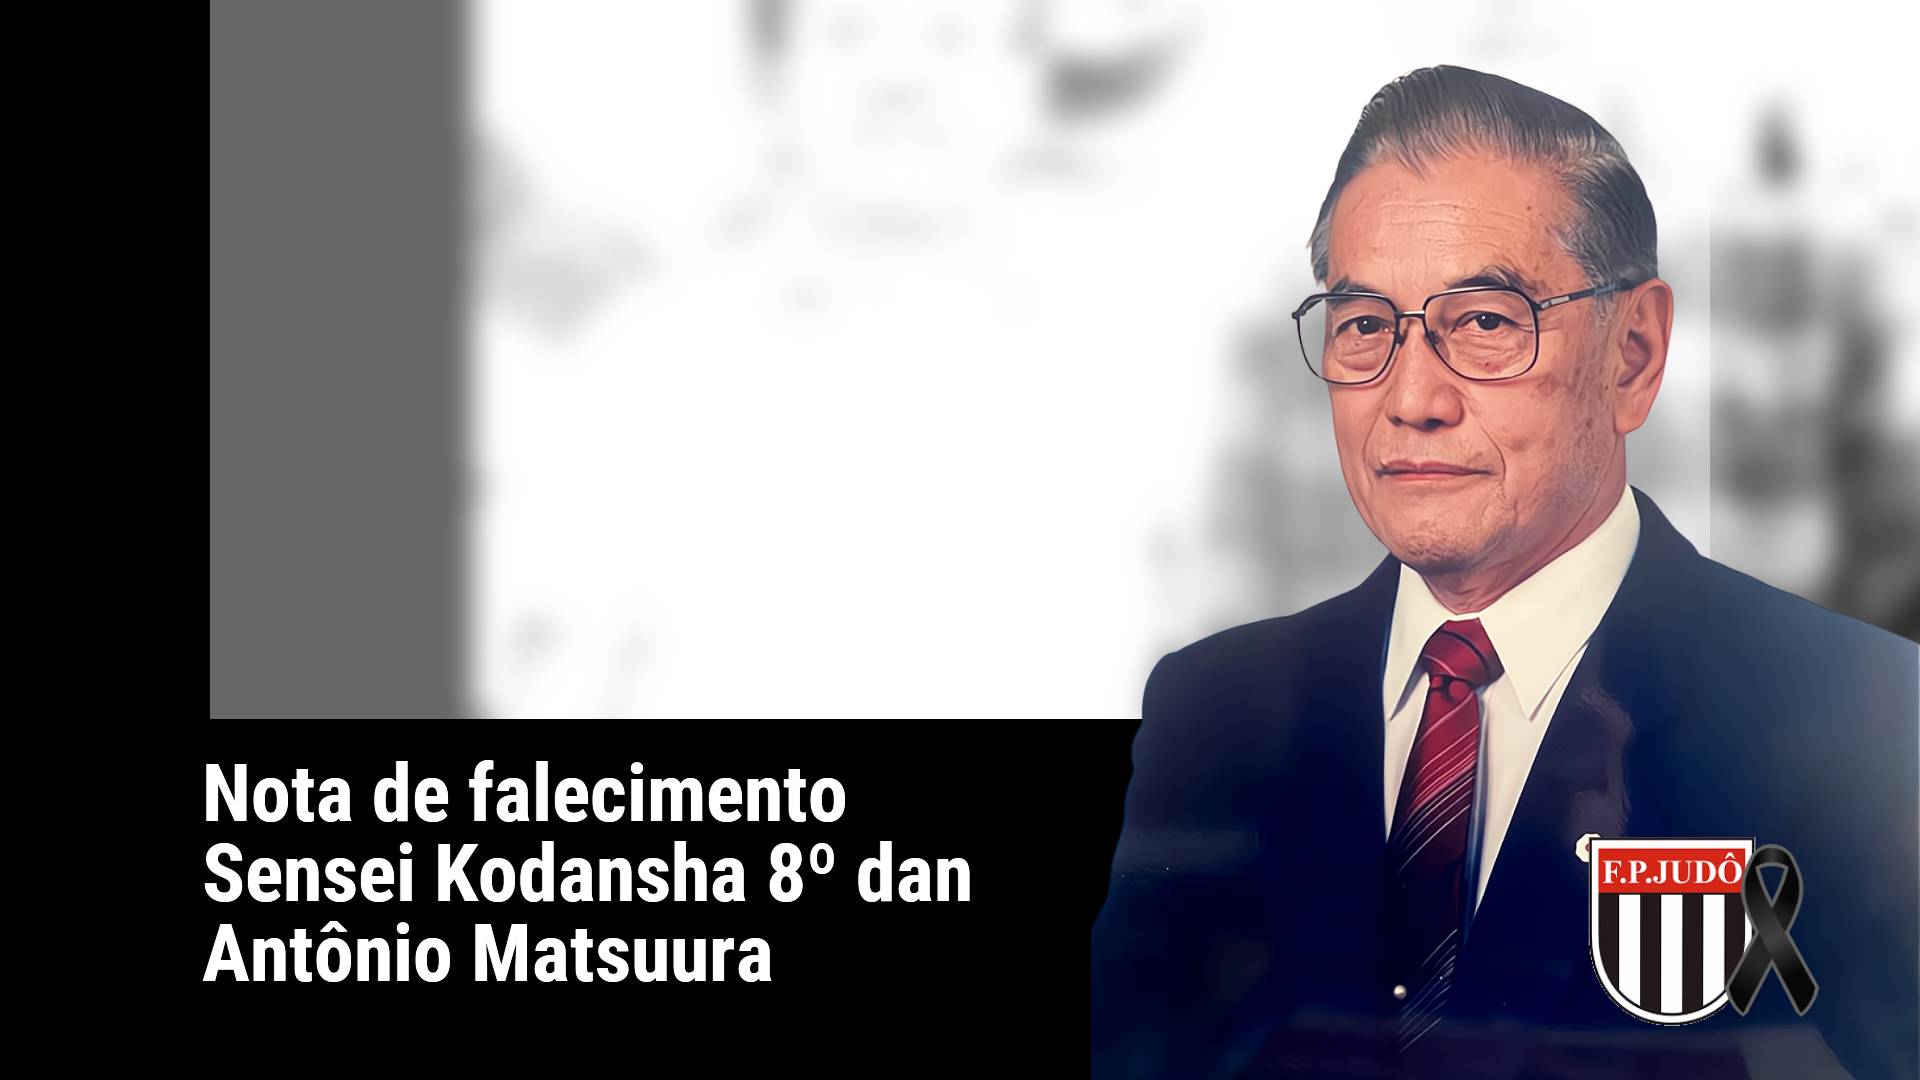 Falecimento Sensei Kodansha 8º dan Antônio Matsuura